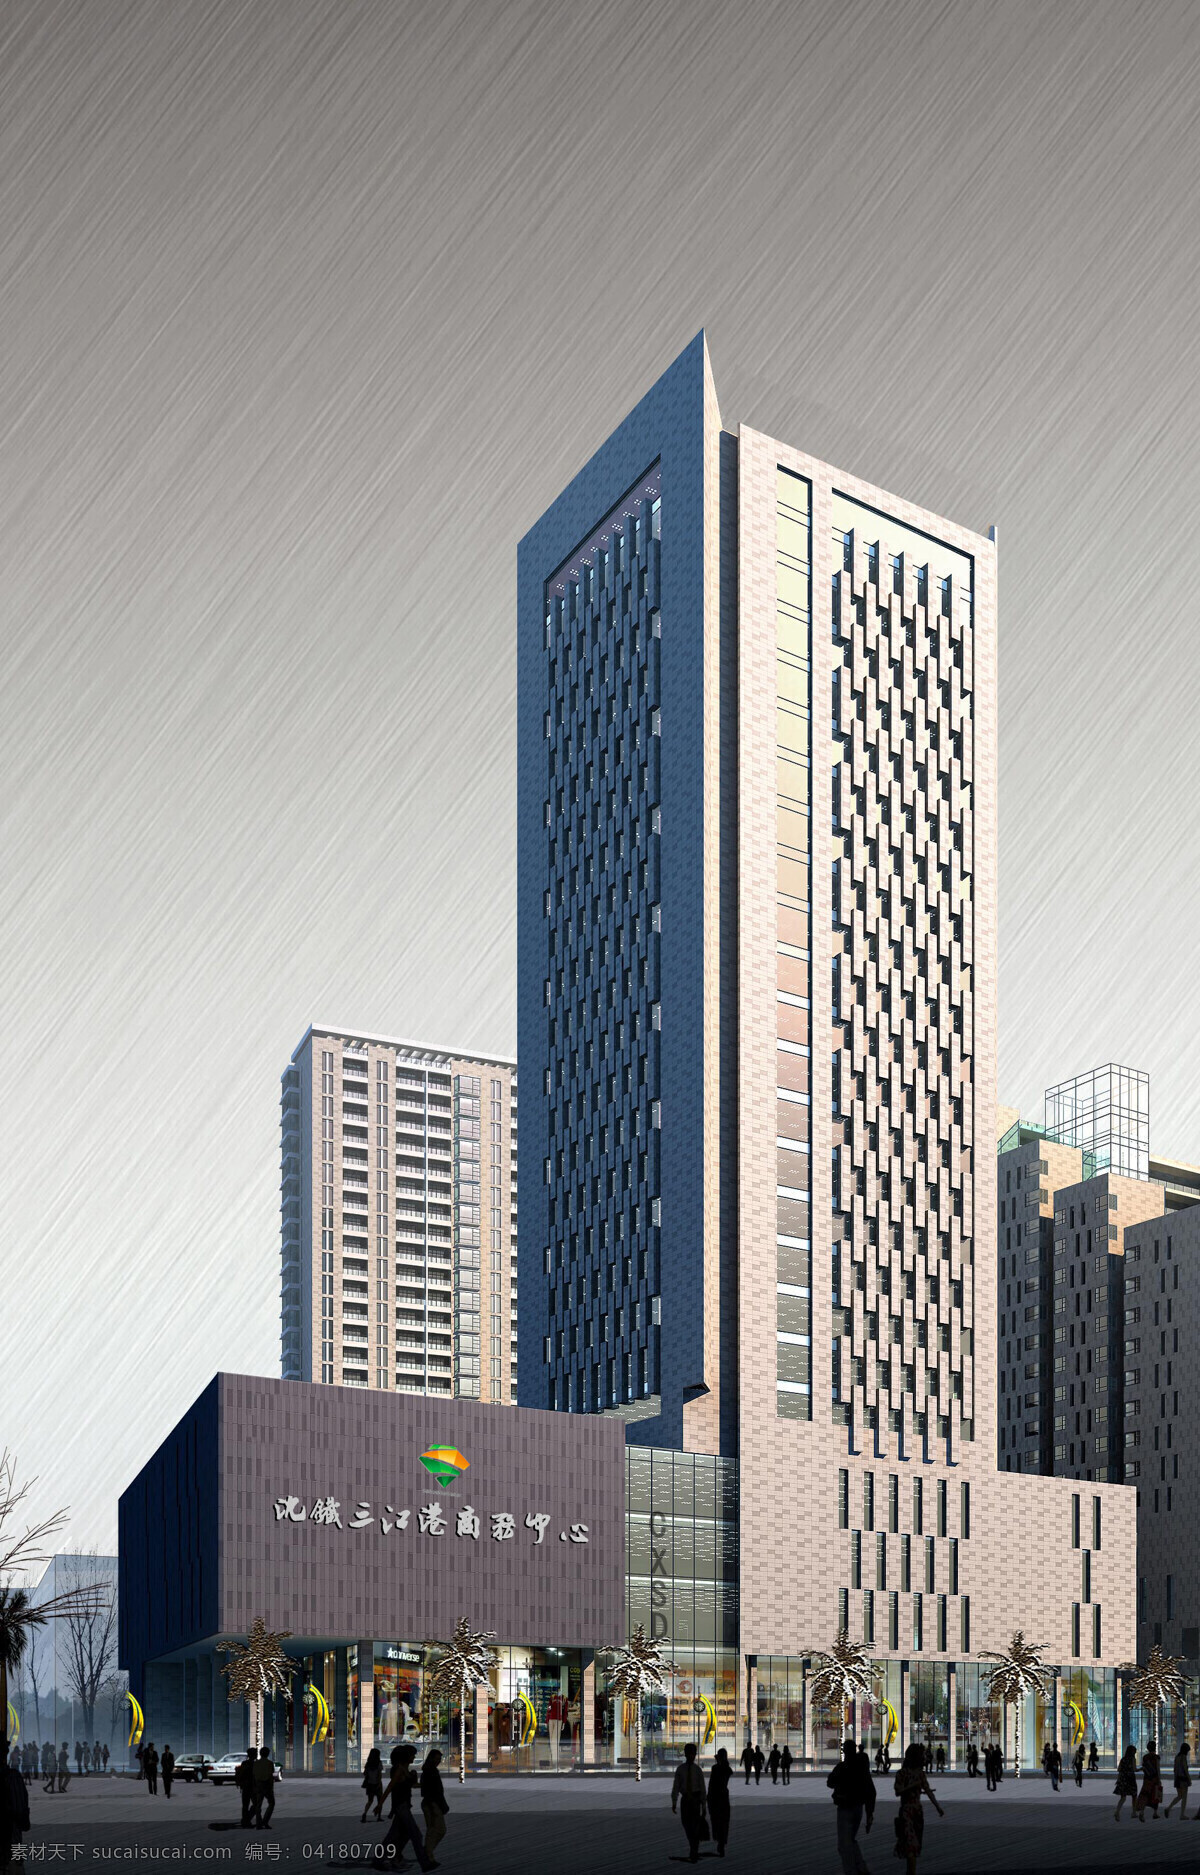 高层 效果图 3d 办公楼 大厦 高层效果图 高楼 环境设计 建筑设计 商务楼 楼房 楼体